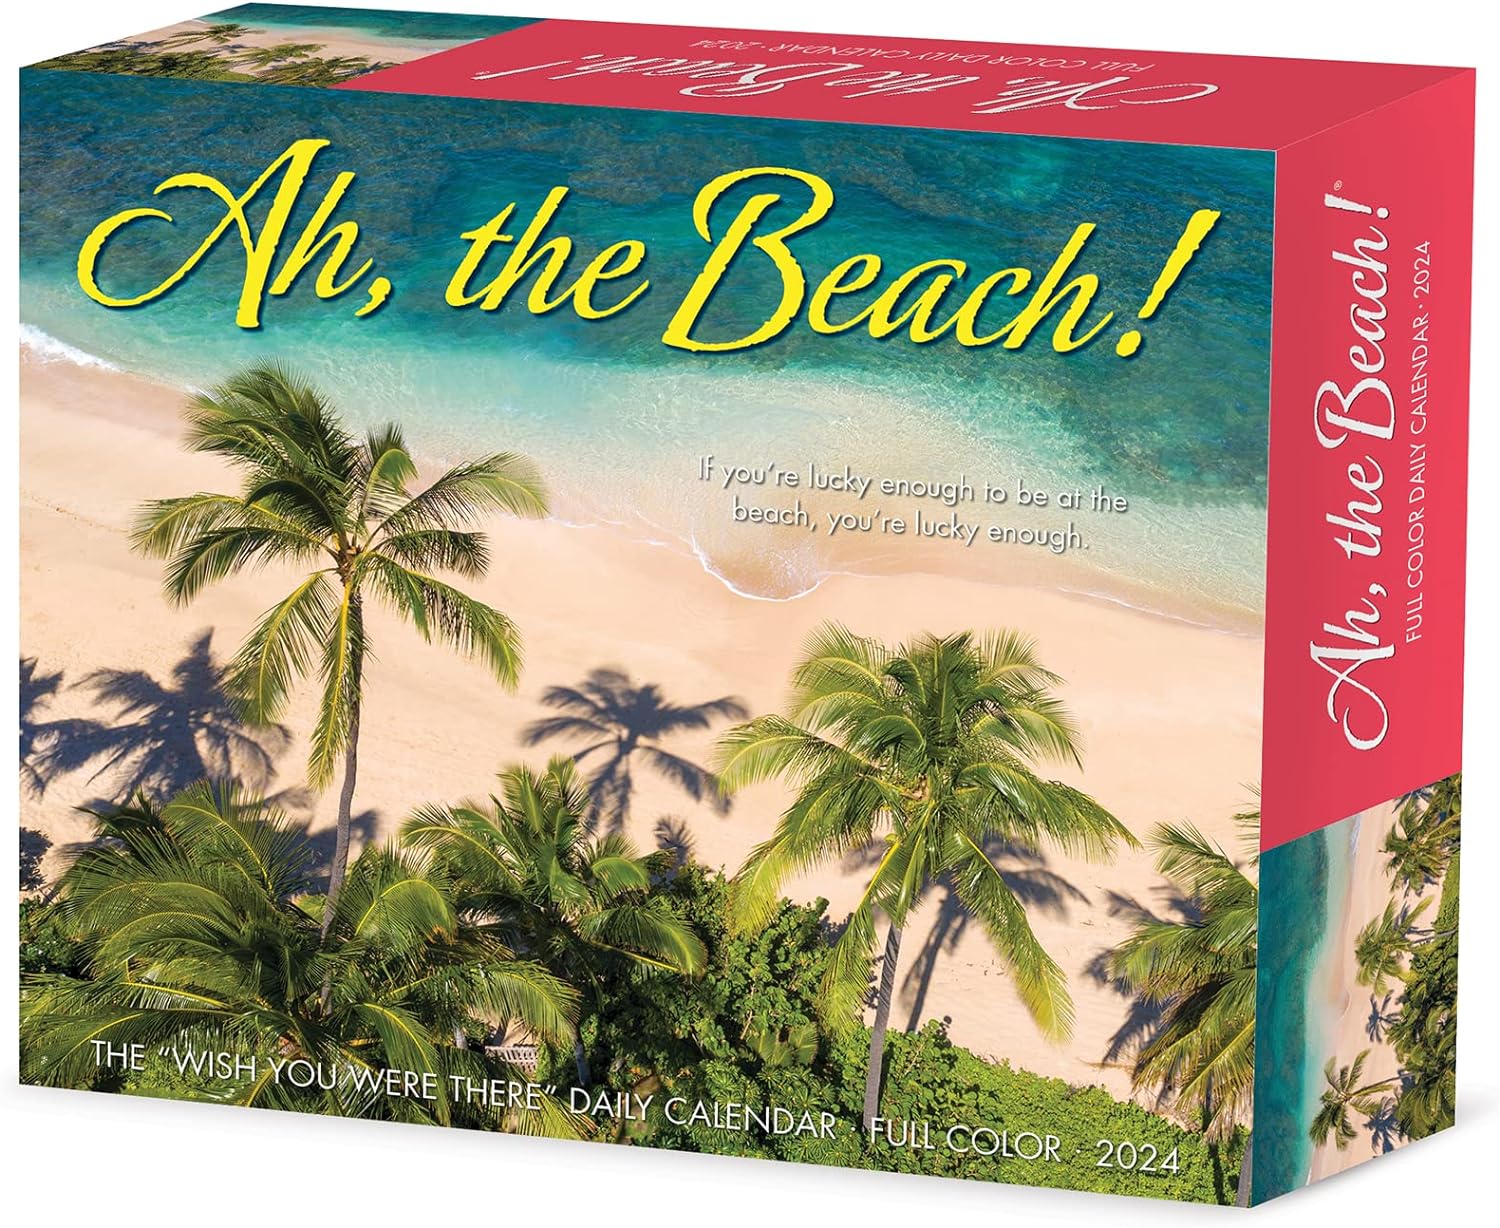 ah-the-beach-2024-calendar